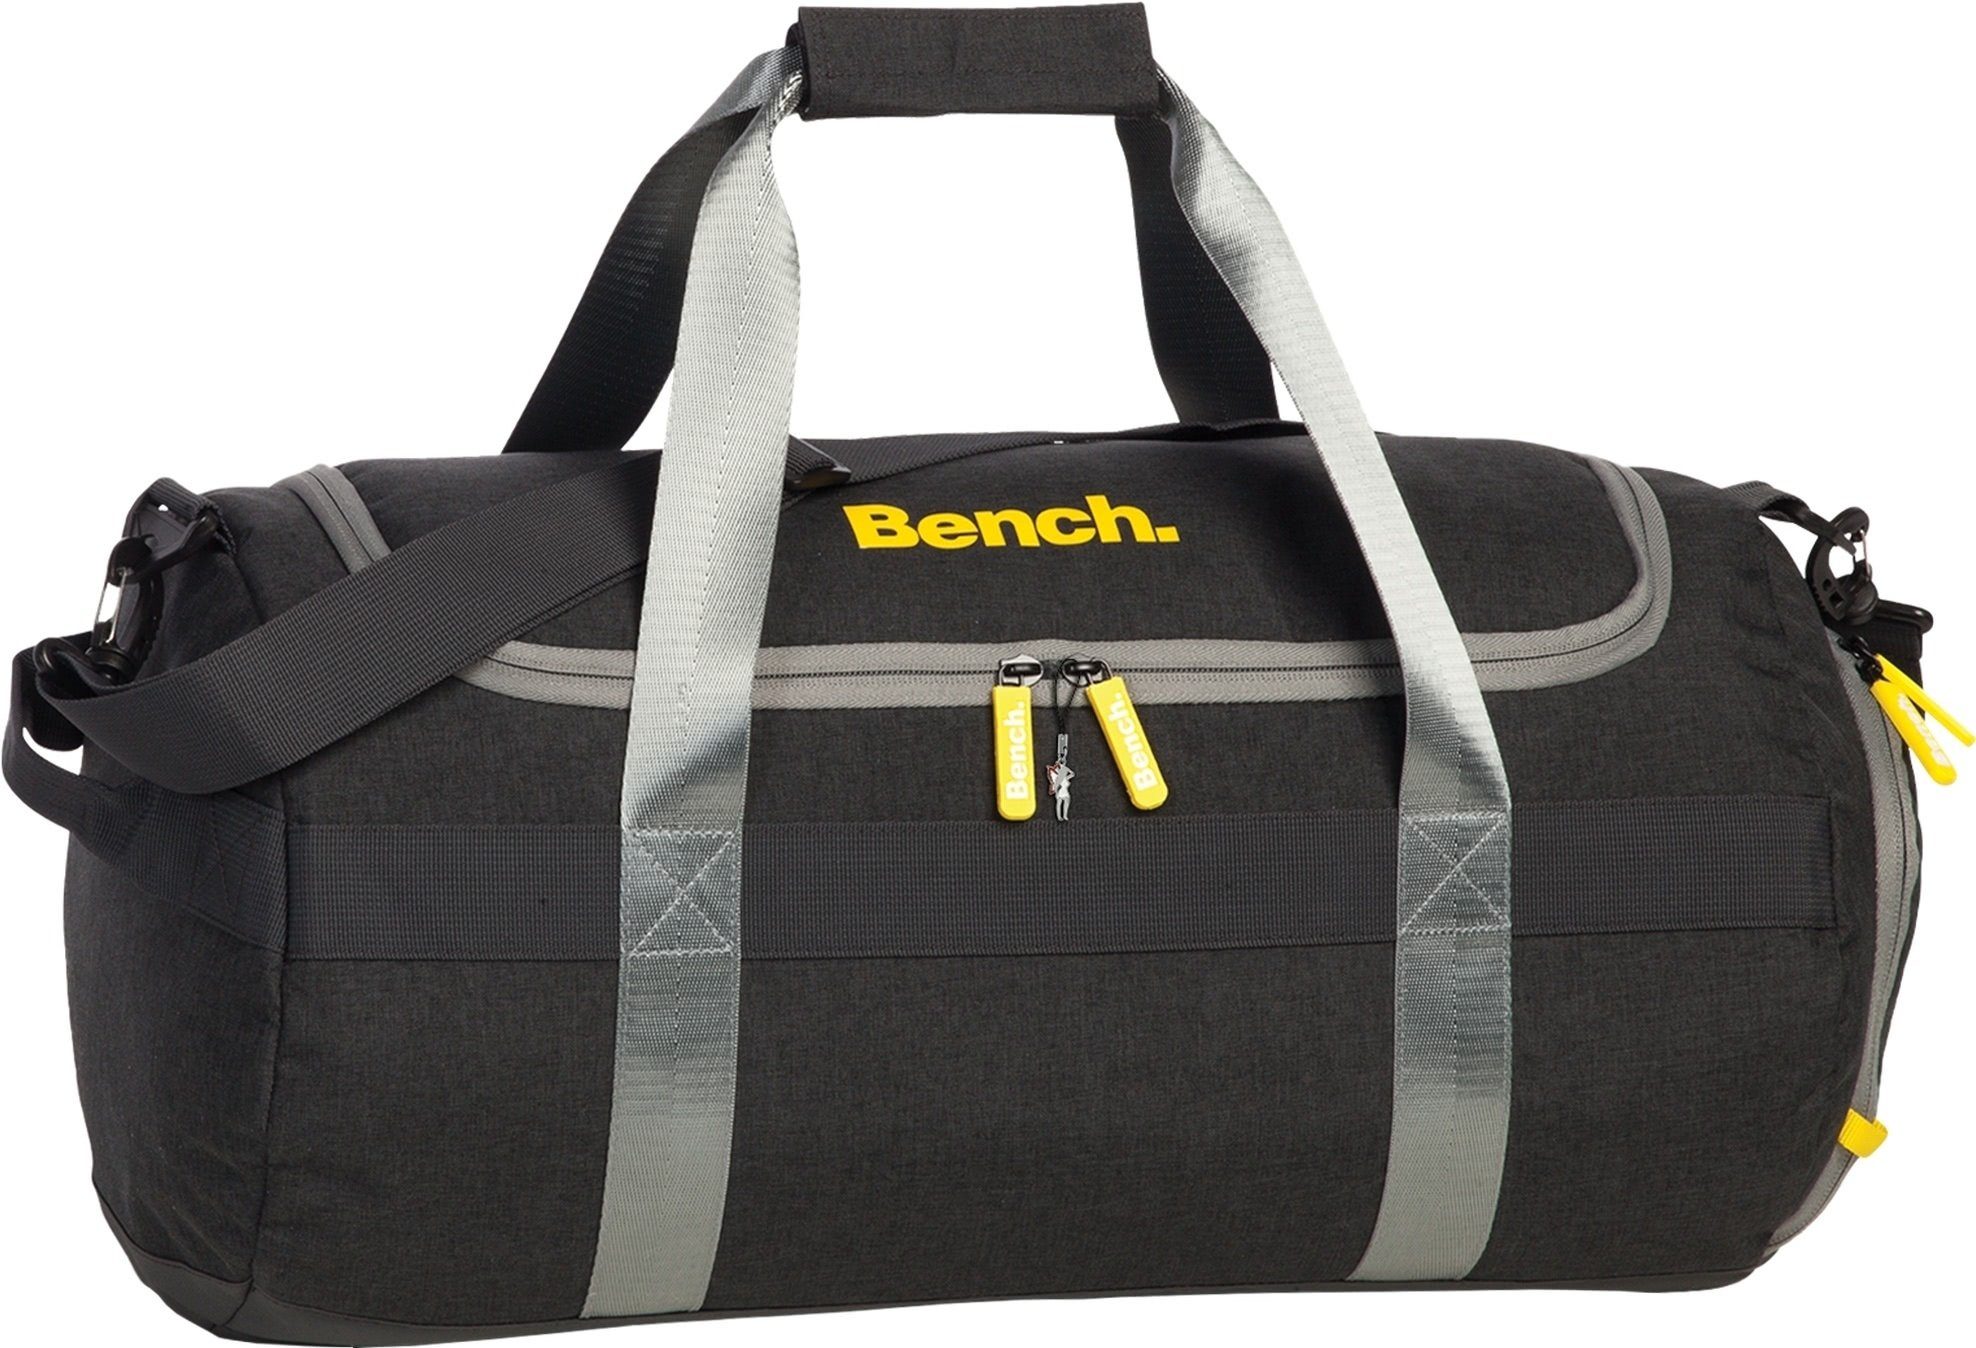 Bench. Sporttasche Bench stylische schwarz, Reisetasche, Jugen Sporttasche anthrazit (Reisetasche), Herren, Polyester, an Sporttasche Damen